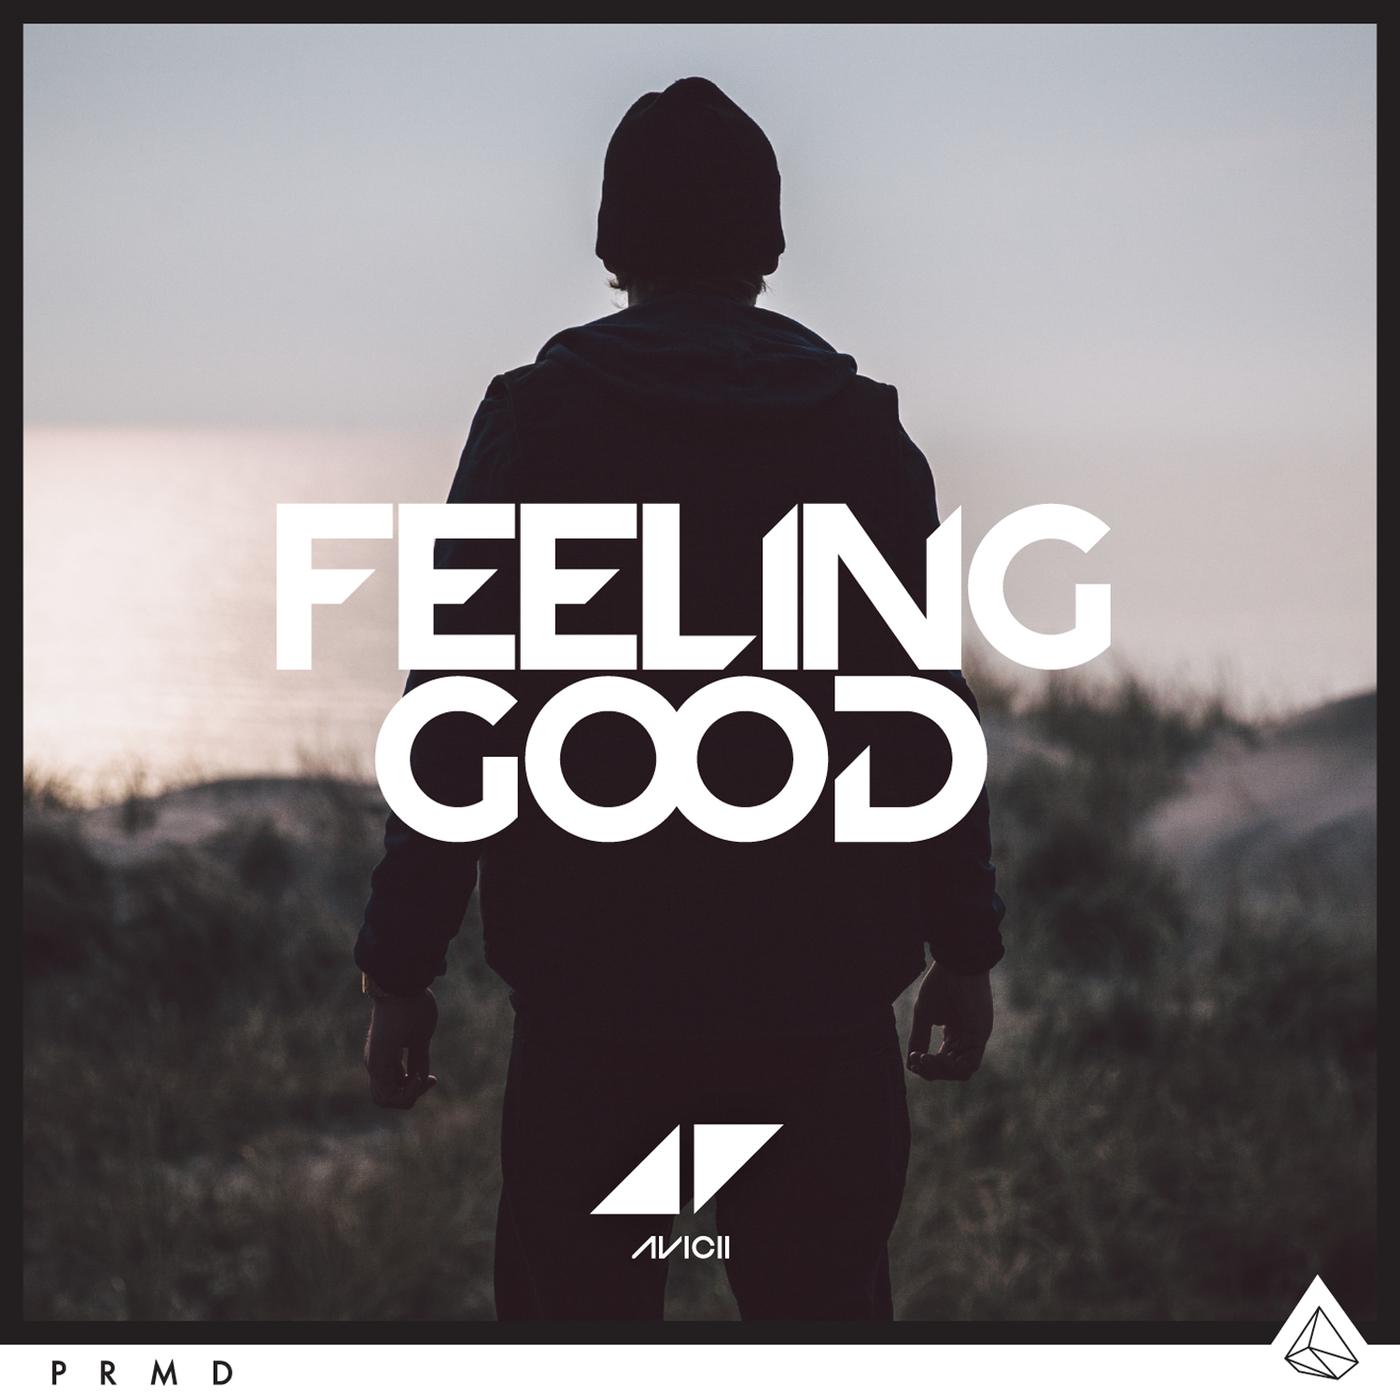 My feel good. Avicii_feeling good «Single» [2015]. Good feeling. Feeling good обложка. Avicii feeling good обложка.